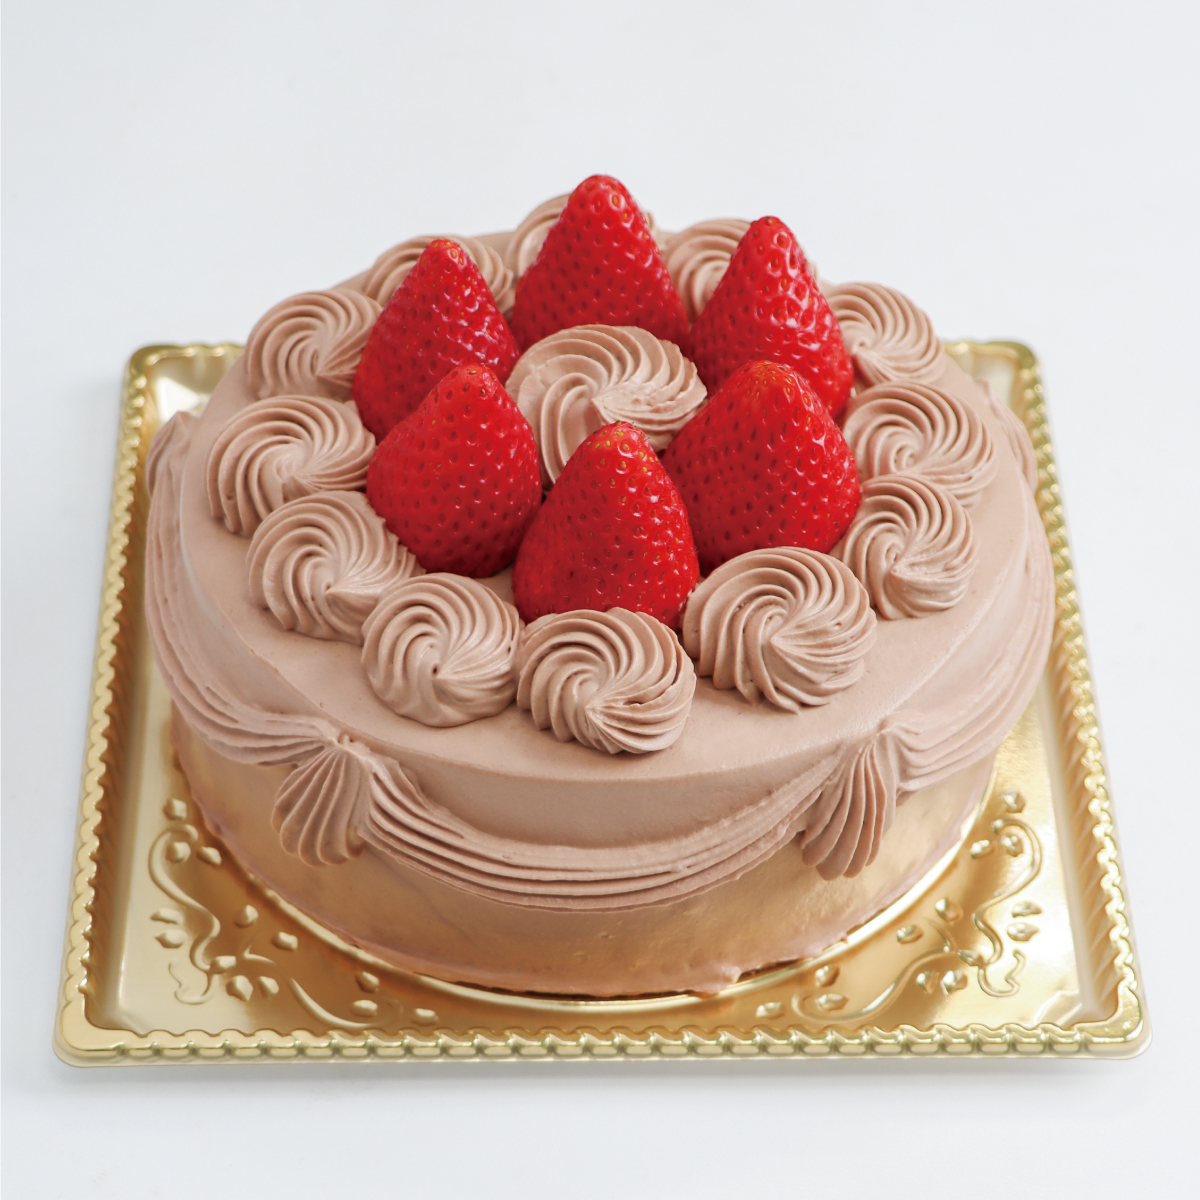 チョコデコレーションケーキ<18cm>